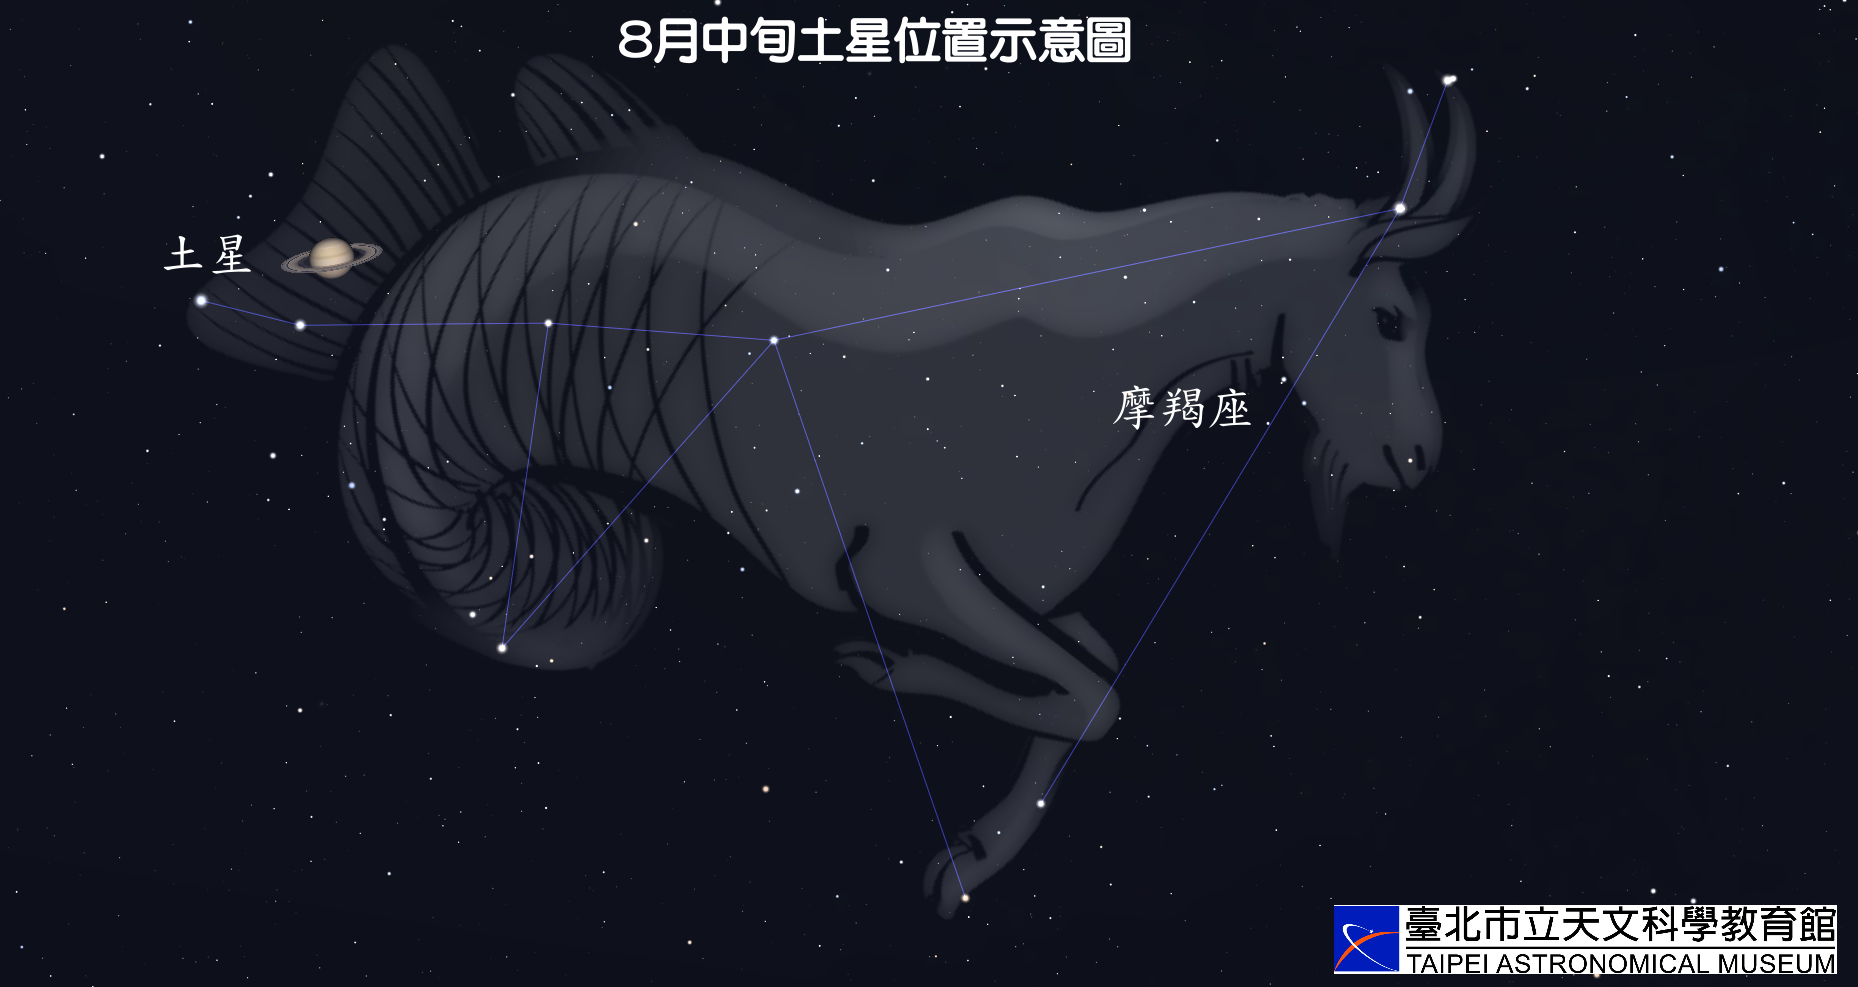 2022年8月中旬土星位于摩羯座示意图。来源：台北天文馆